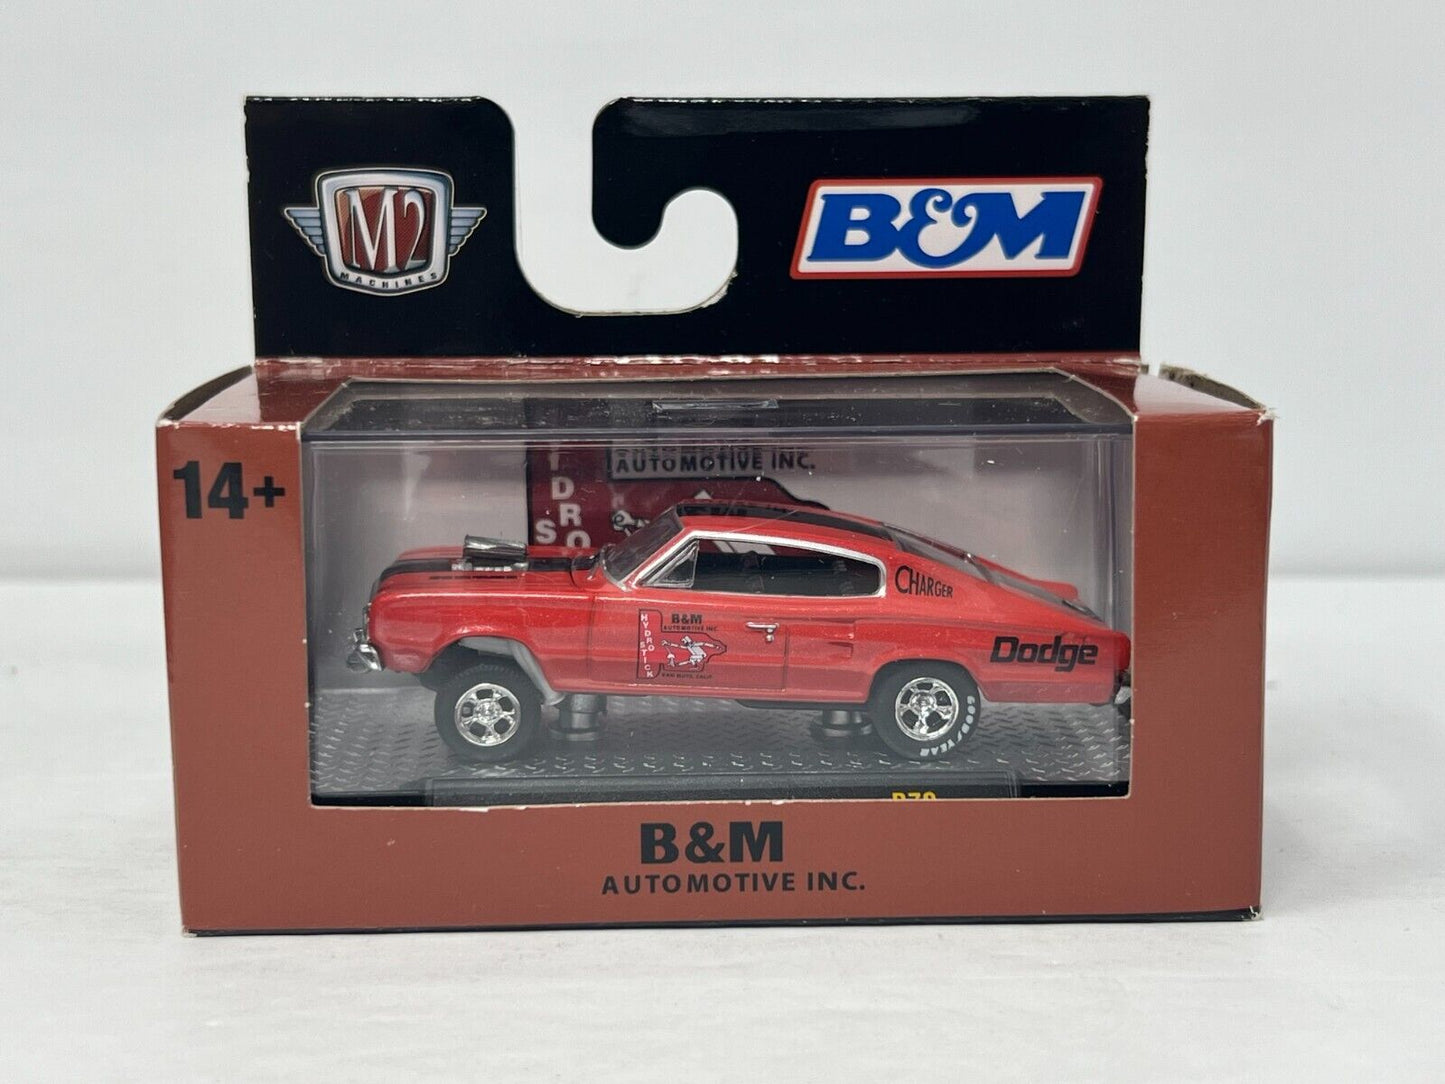 M2 Machines B&M 1966 Dodge Charger Gasser 1:64 Diecast